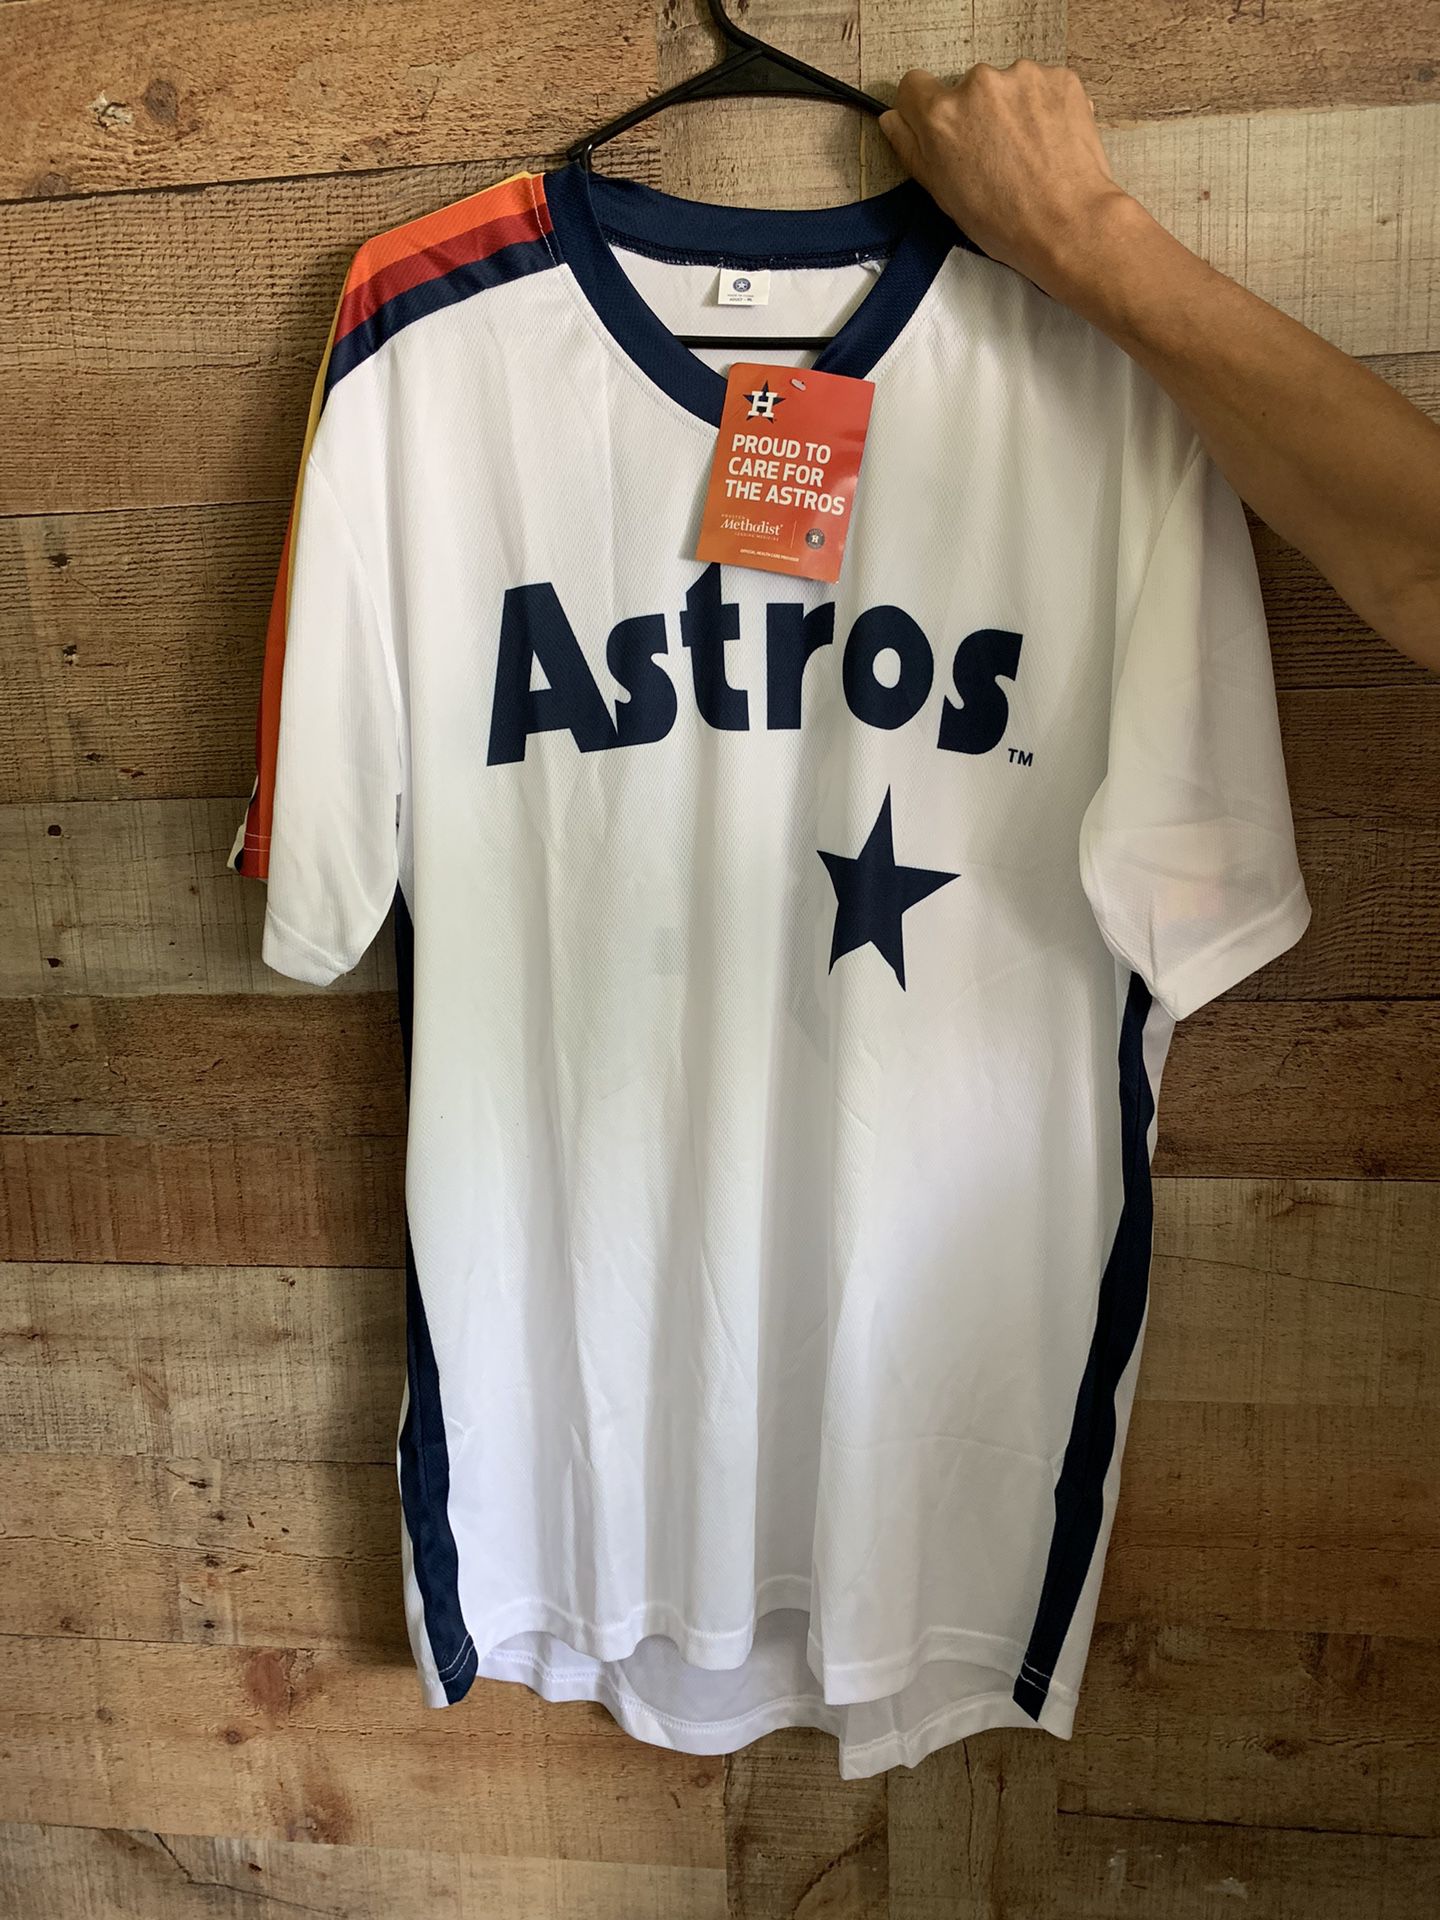 Playera De Los Astros Nueva XL for Sale in Rosenberg, TX - OfferUp